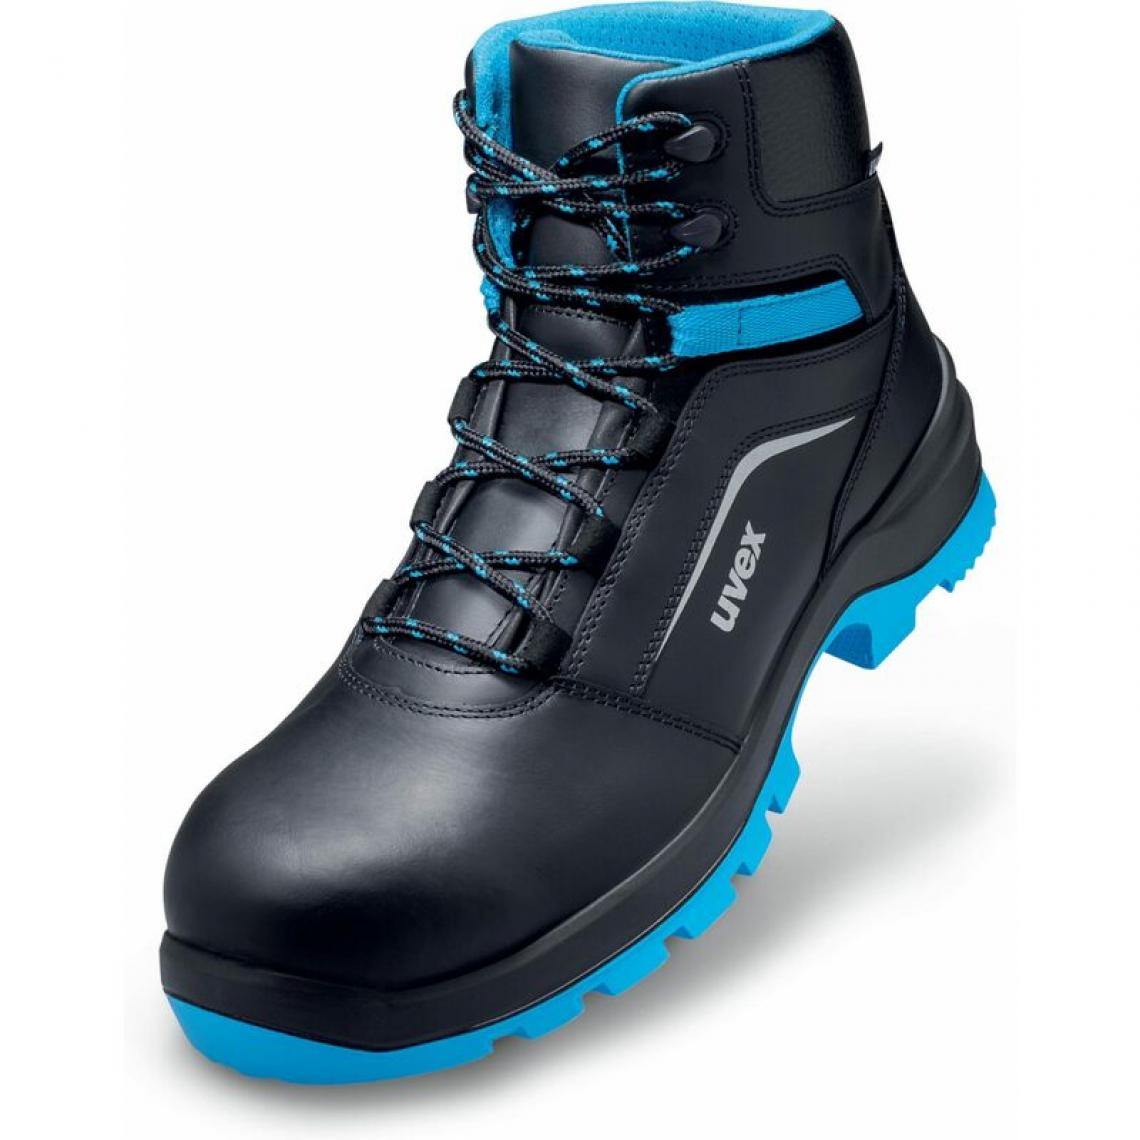 Uvex - uvex 2 xenova Chaussures montantes S2 SRC, T. 43, noir/bleu () - Equipement de Protection Individuelle